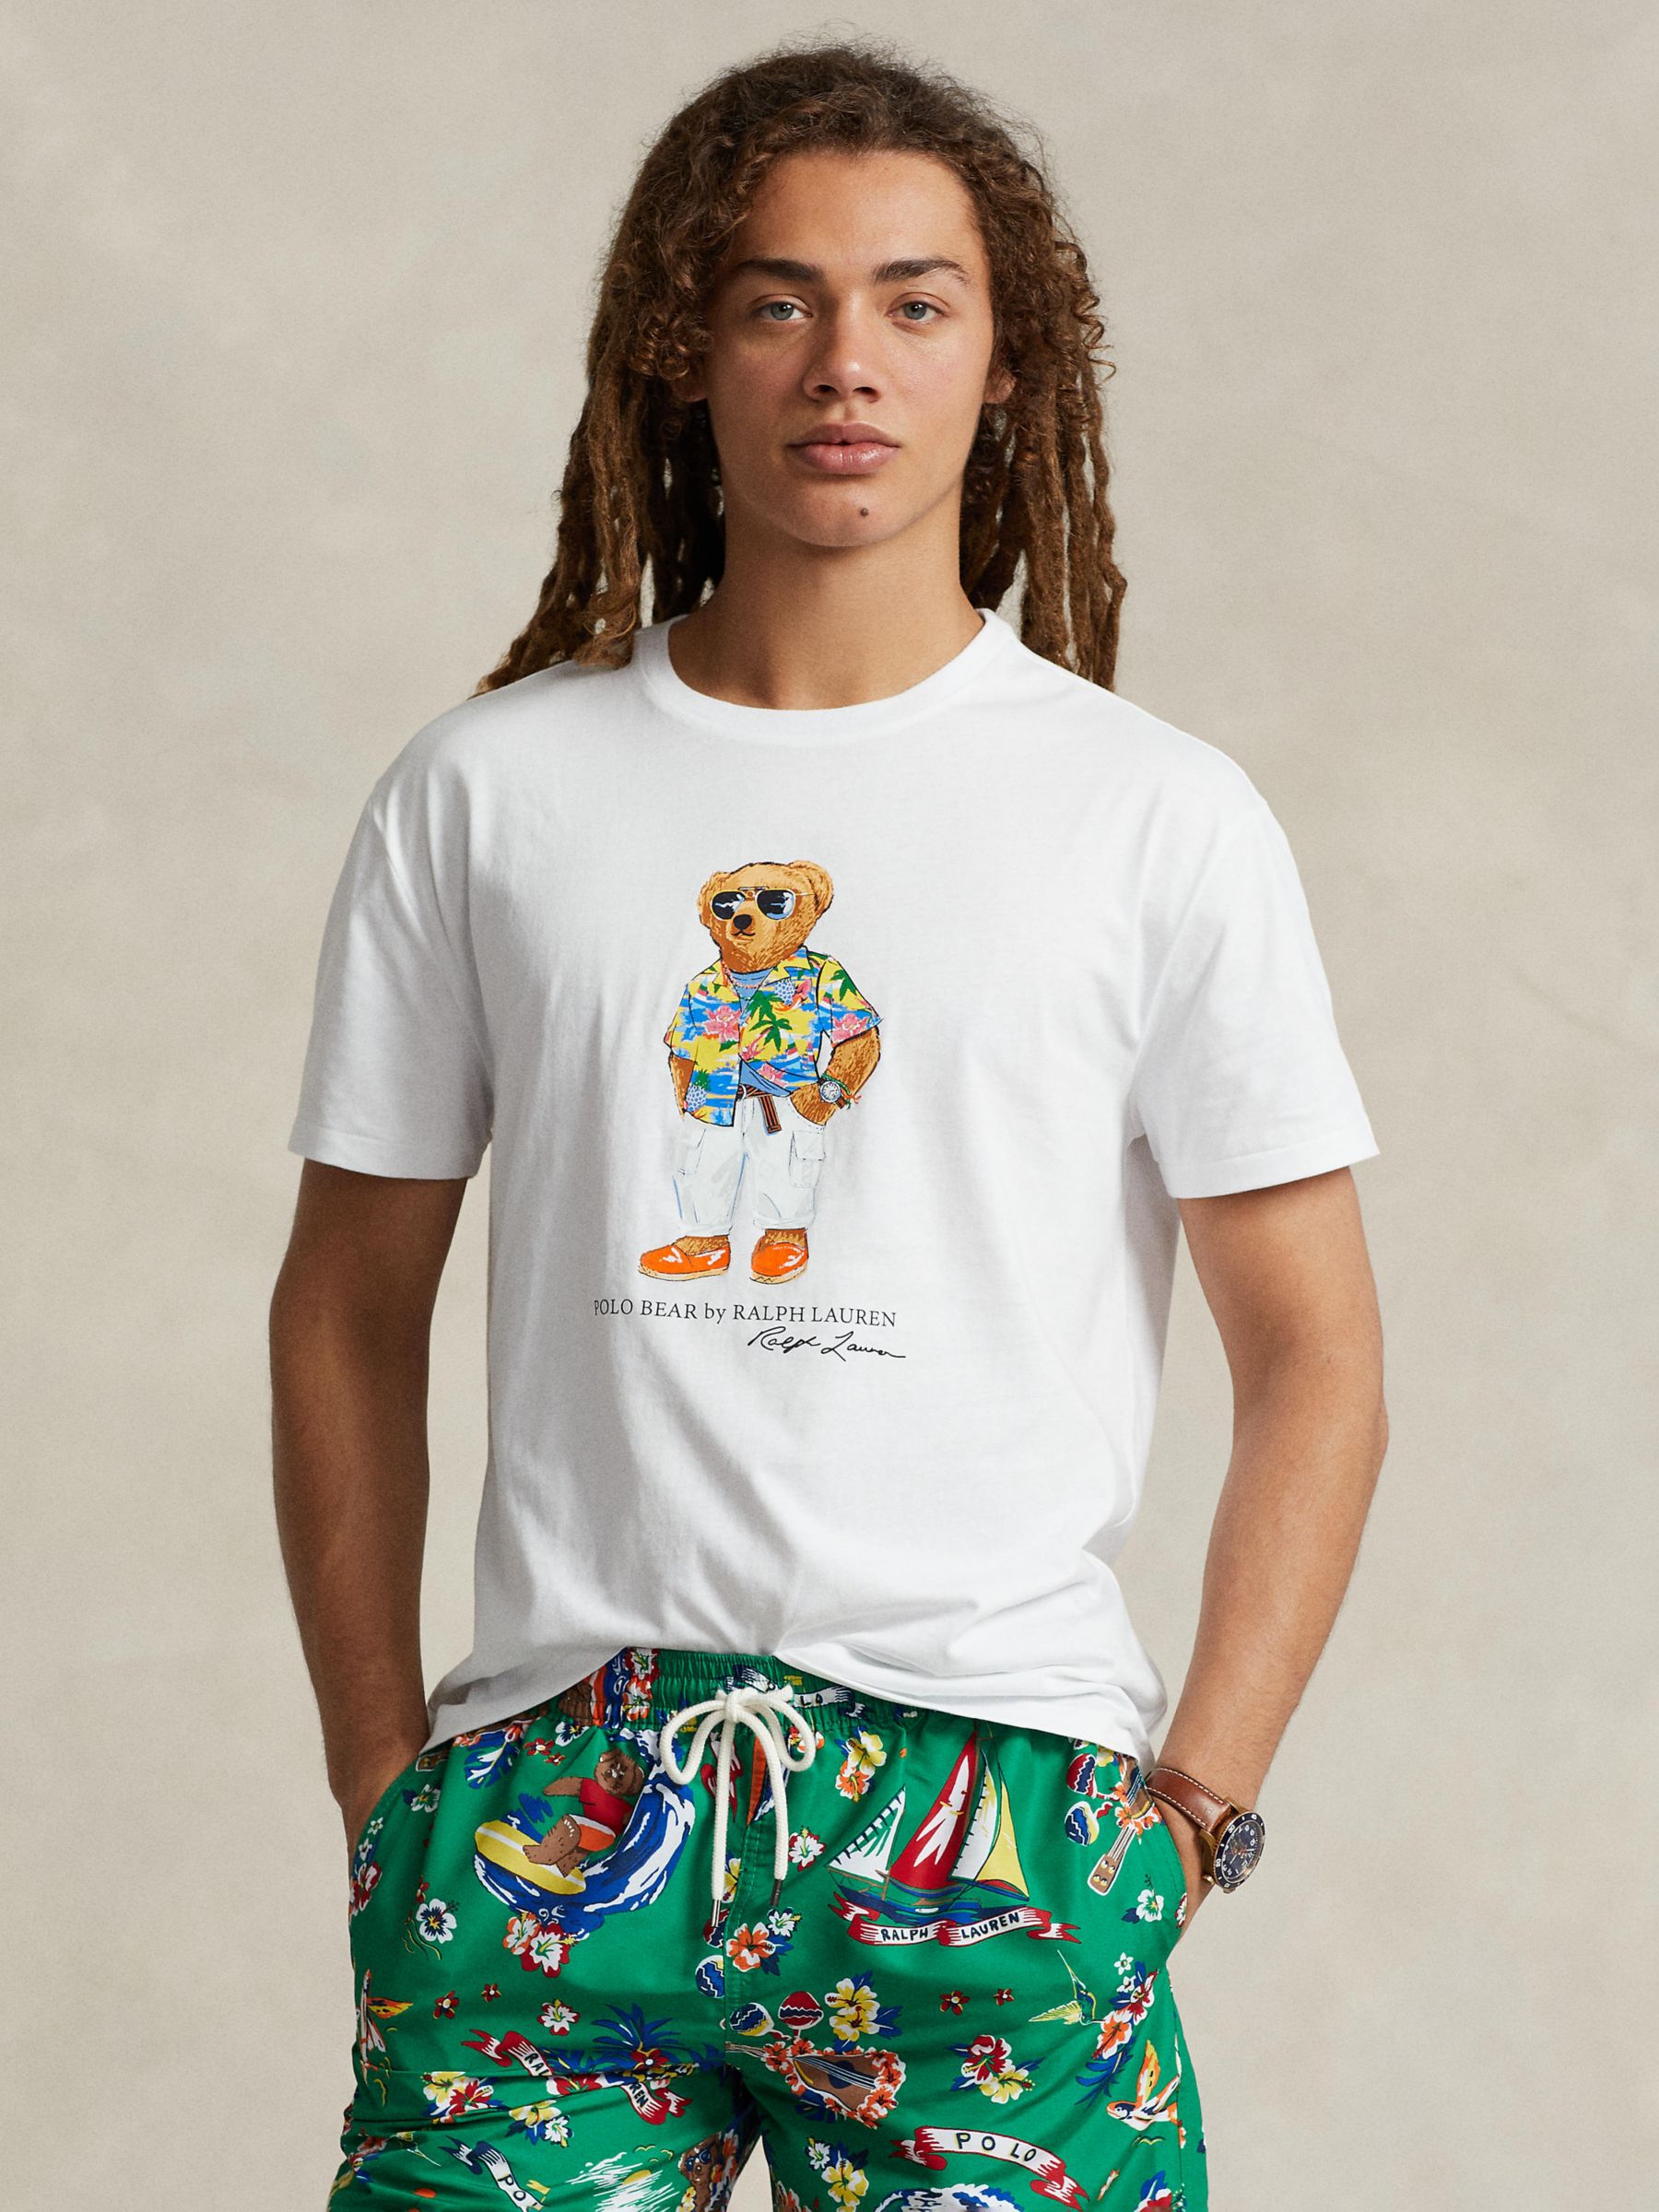 Ralph Lauren Polo Bear Jersey T-Shirt, Whbch Clubbear, S